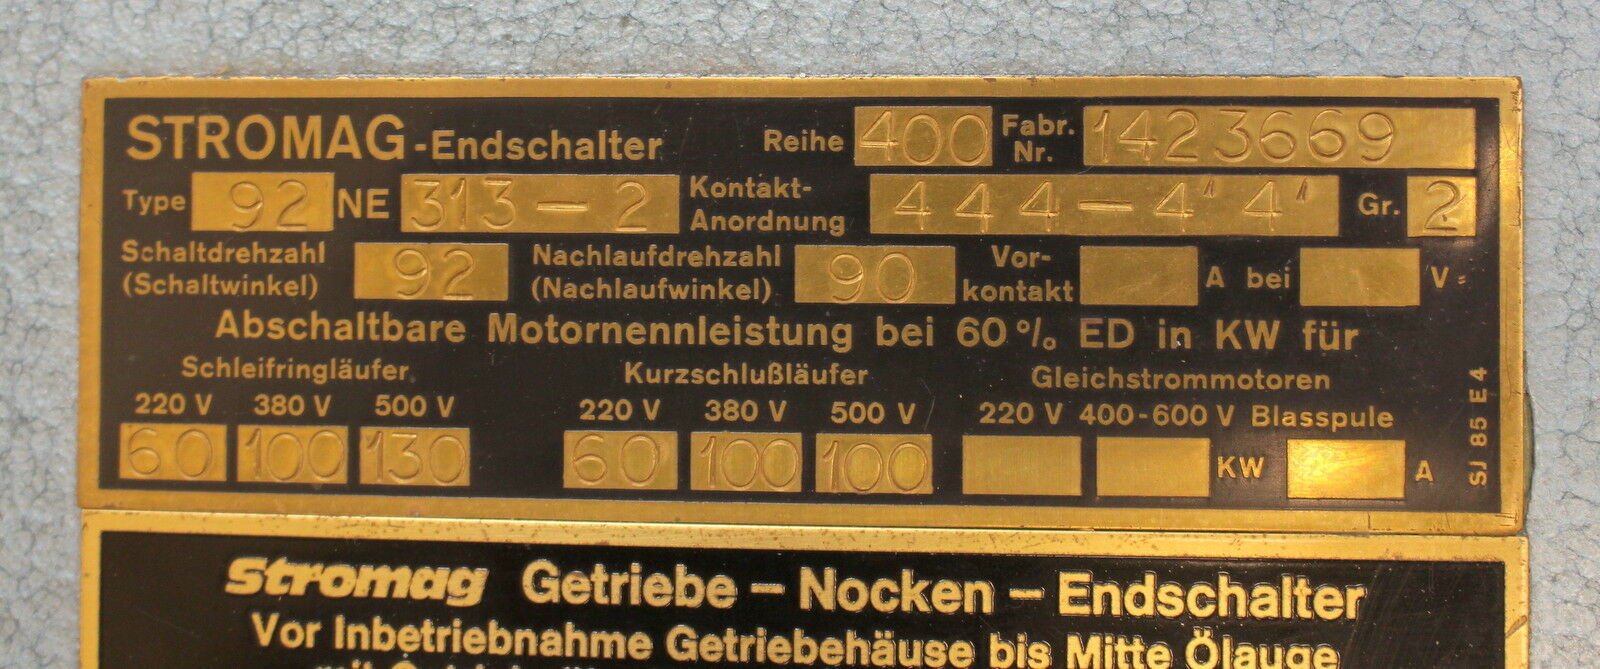 STROMAG Getriebe-Nocken-Endschalter Type 92 NE 313-2 Baureihe 400 Nr. 1423669